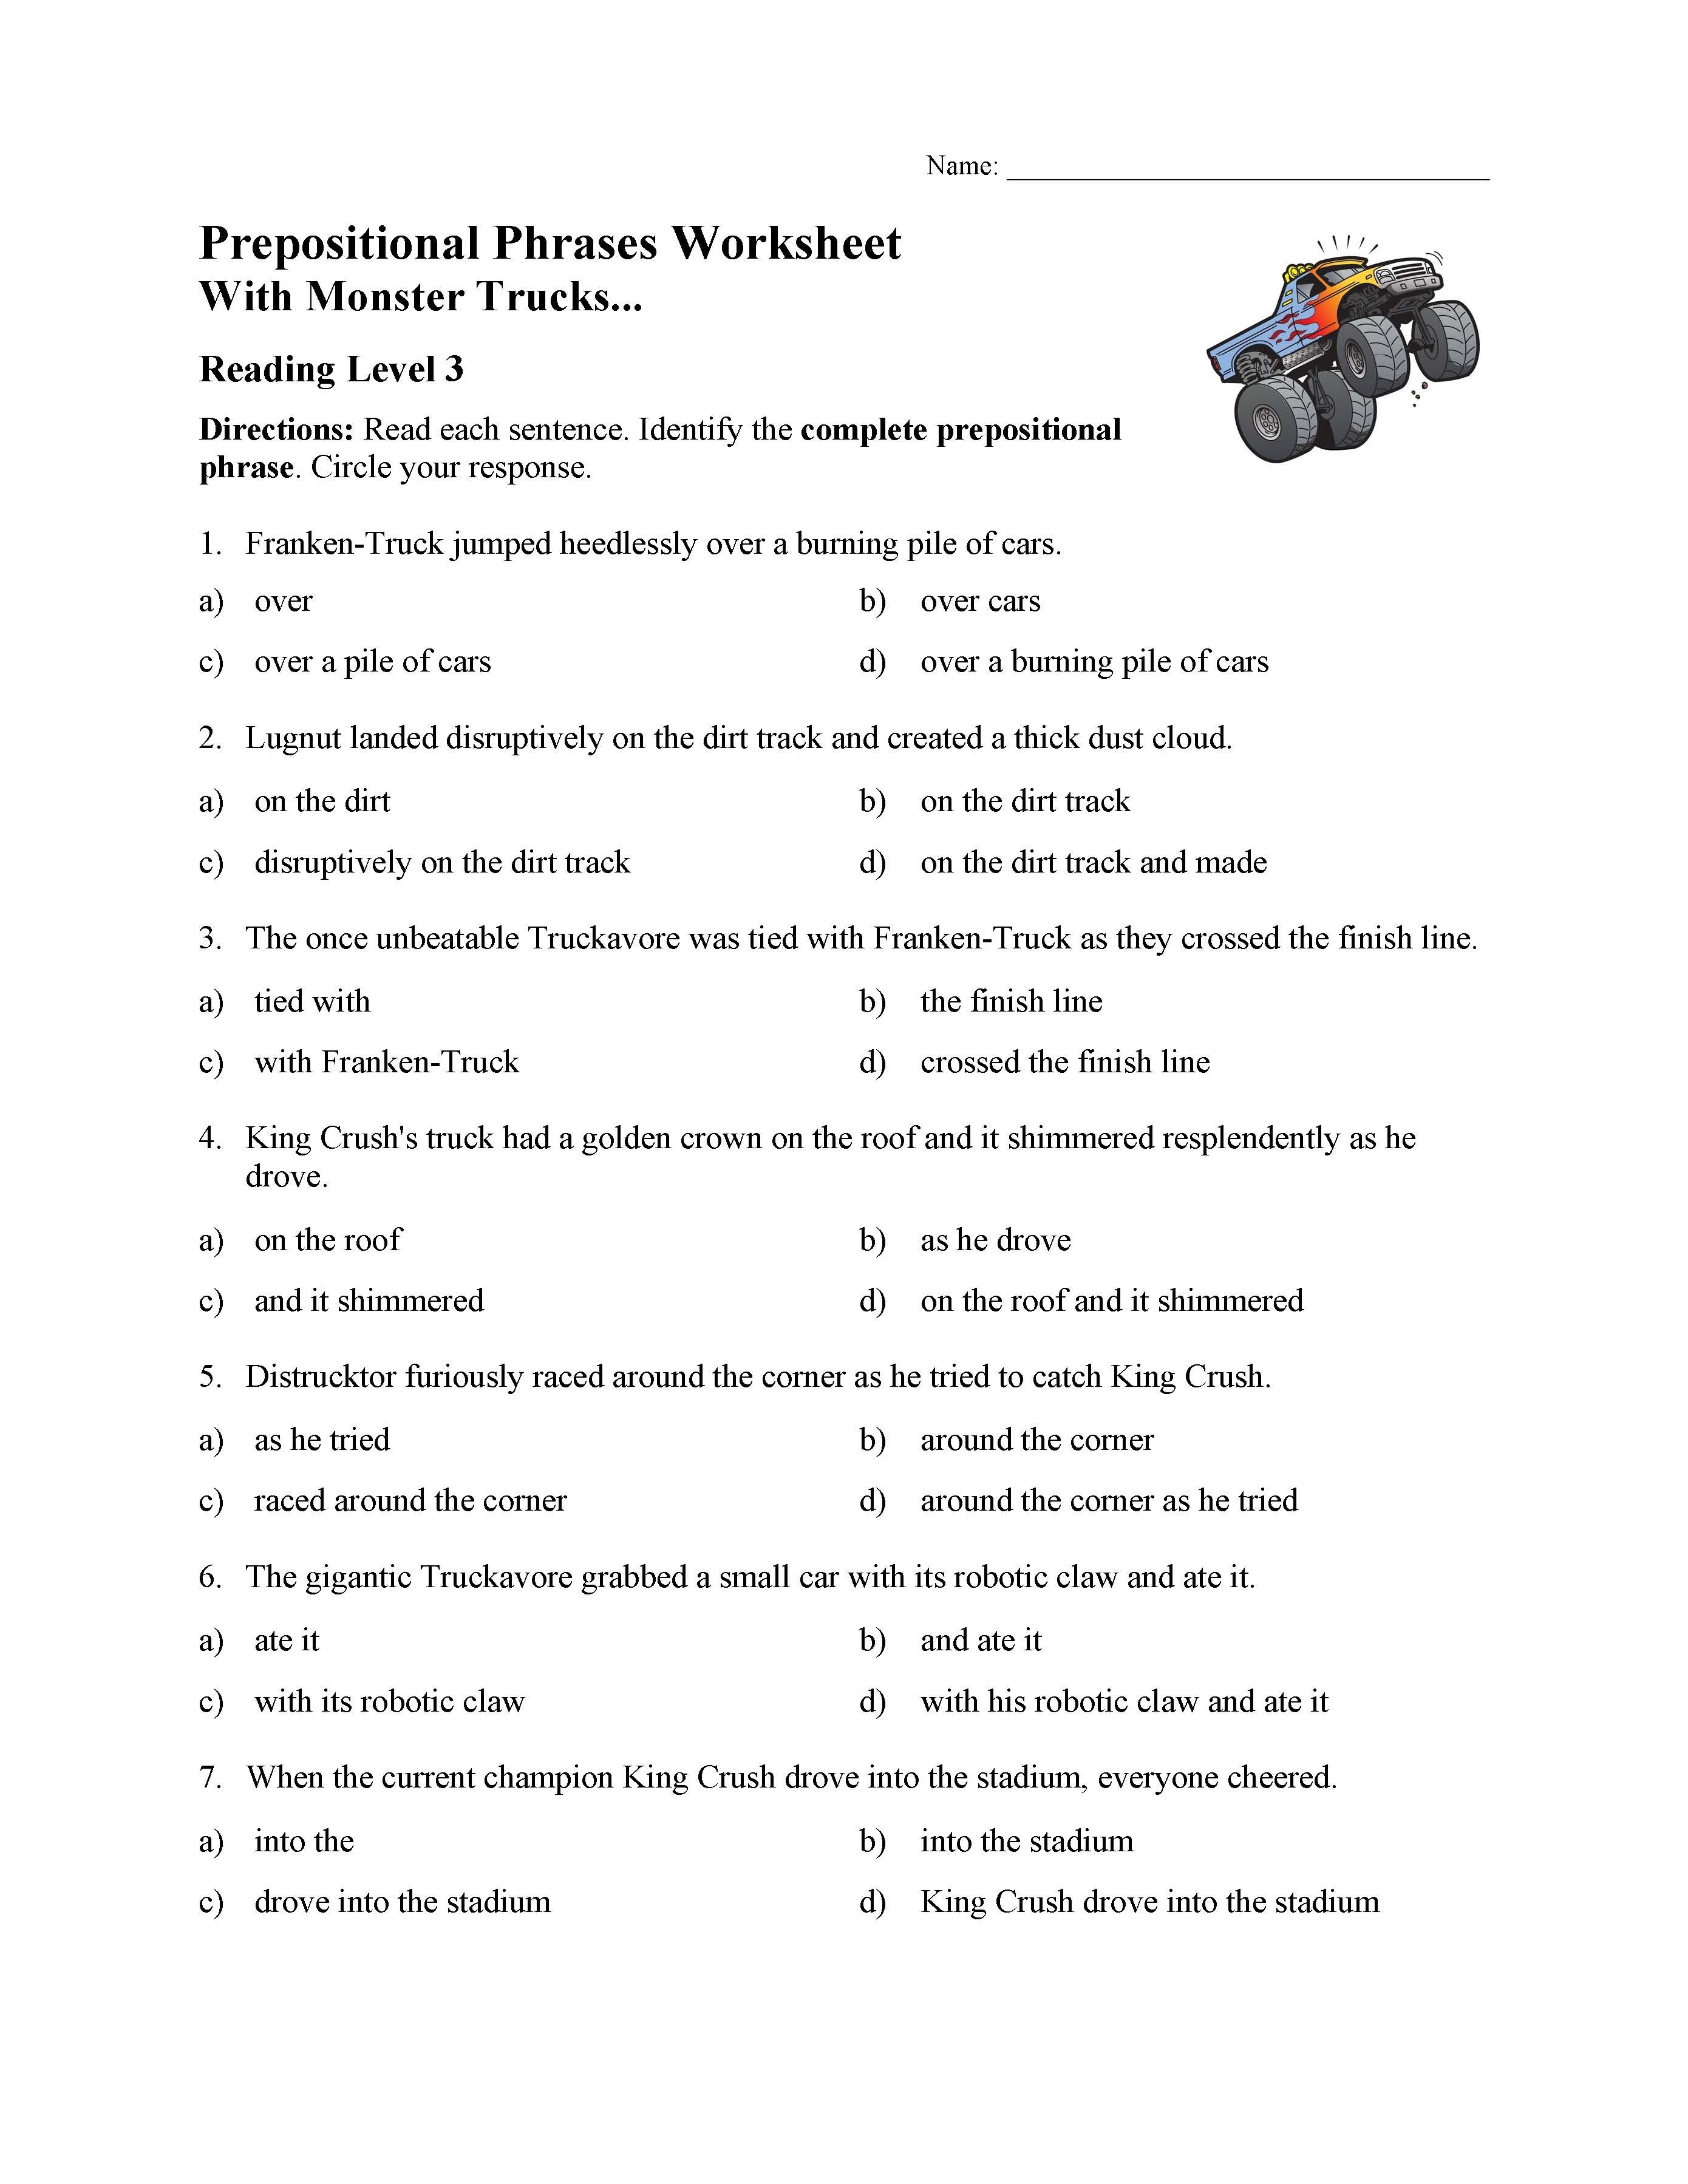 Prepositional Phrase Worksheet 4th Grade Prepositional Phrases Worksheet 1 Reading Level 3